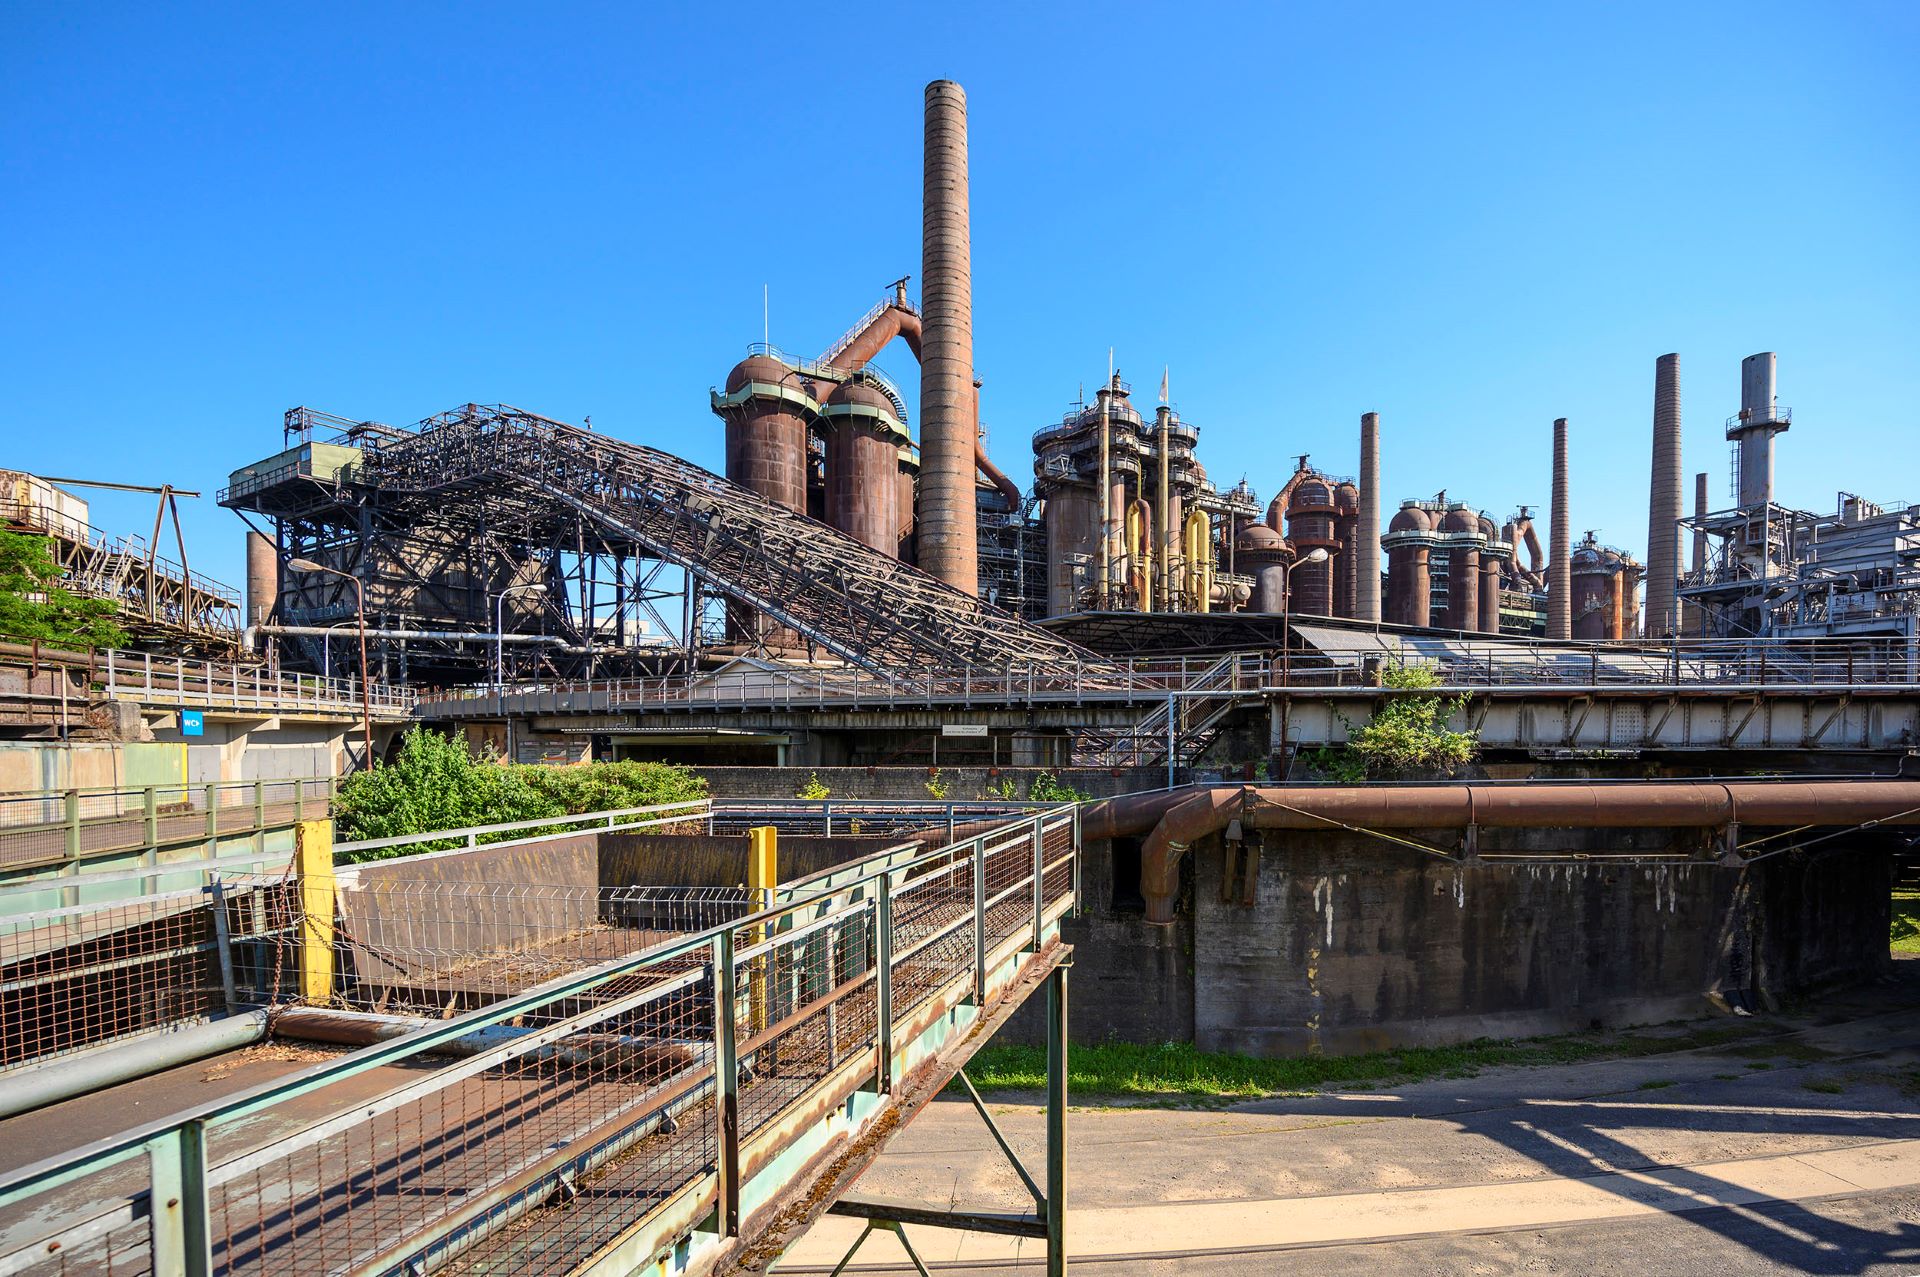 Im Hintergrund sind die rostfarbenen Strukturen, die die Völklinger Hütte ausmachen, abgebildet. Eine Industrieszene mit rostfarbenem Metall an verschiedenen historischen Maschinen ist vor blauem Himmel abgebildet.